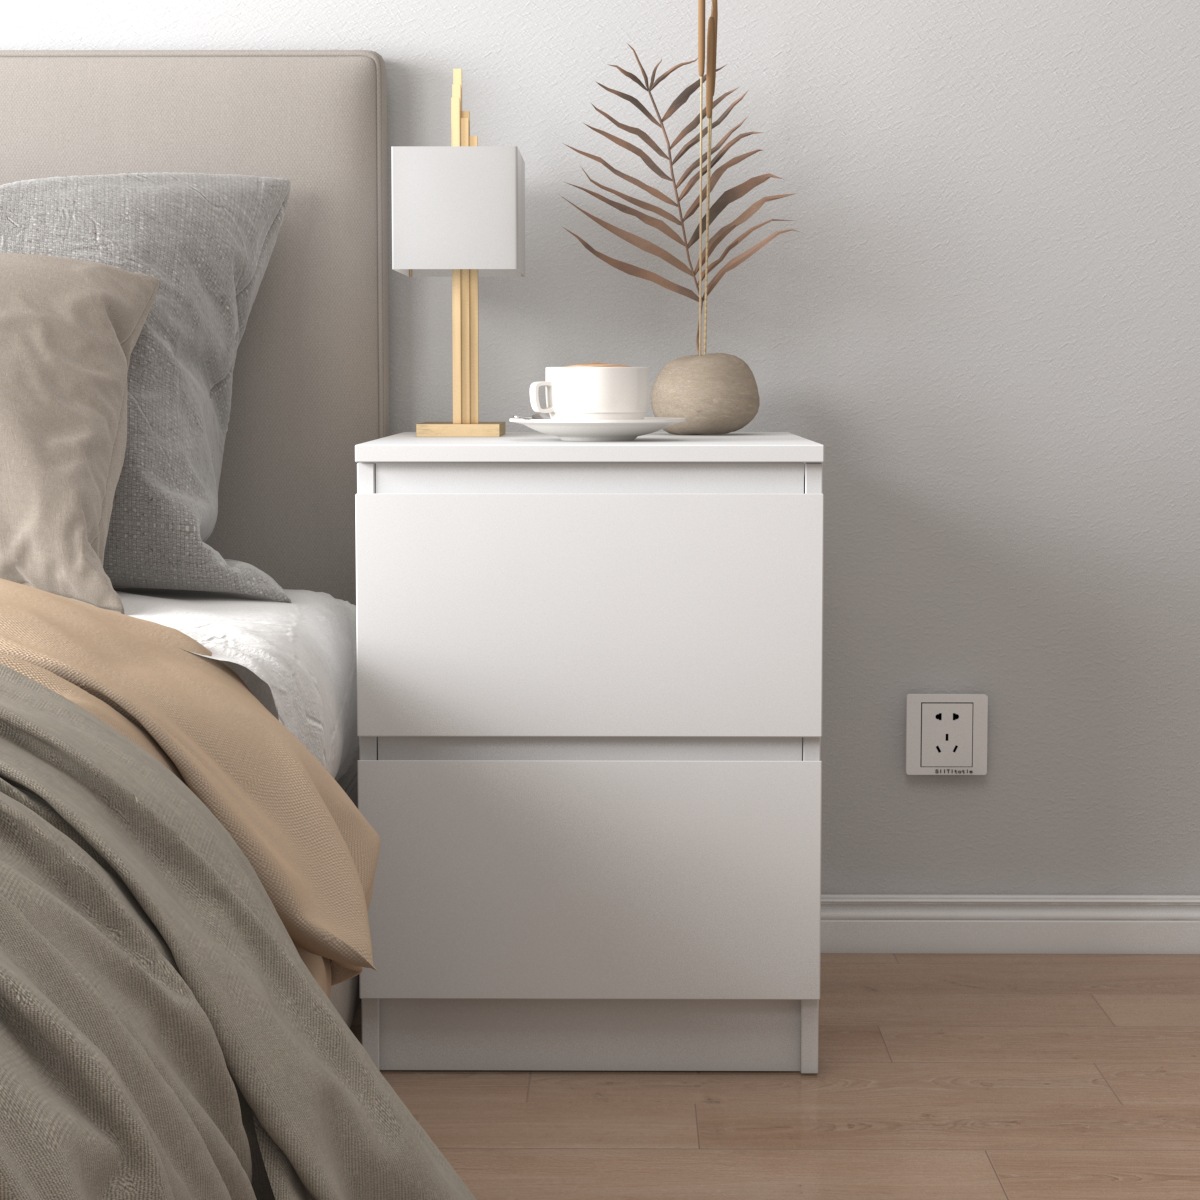 现代简约家用小型实木卧室床边柜子 出租房用简易储物柜